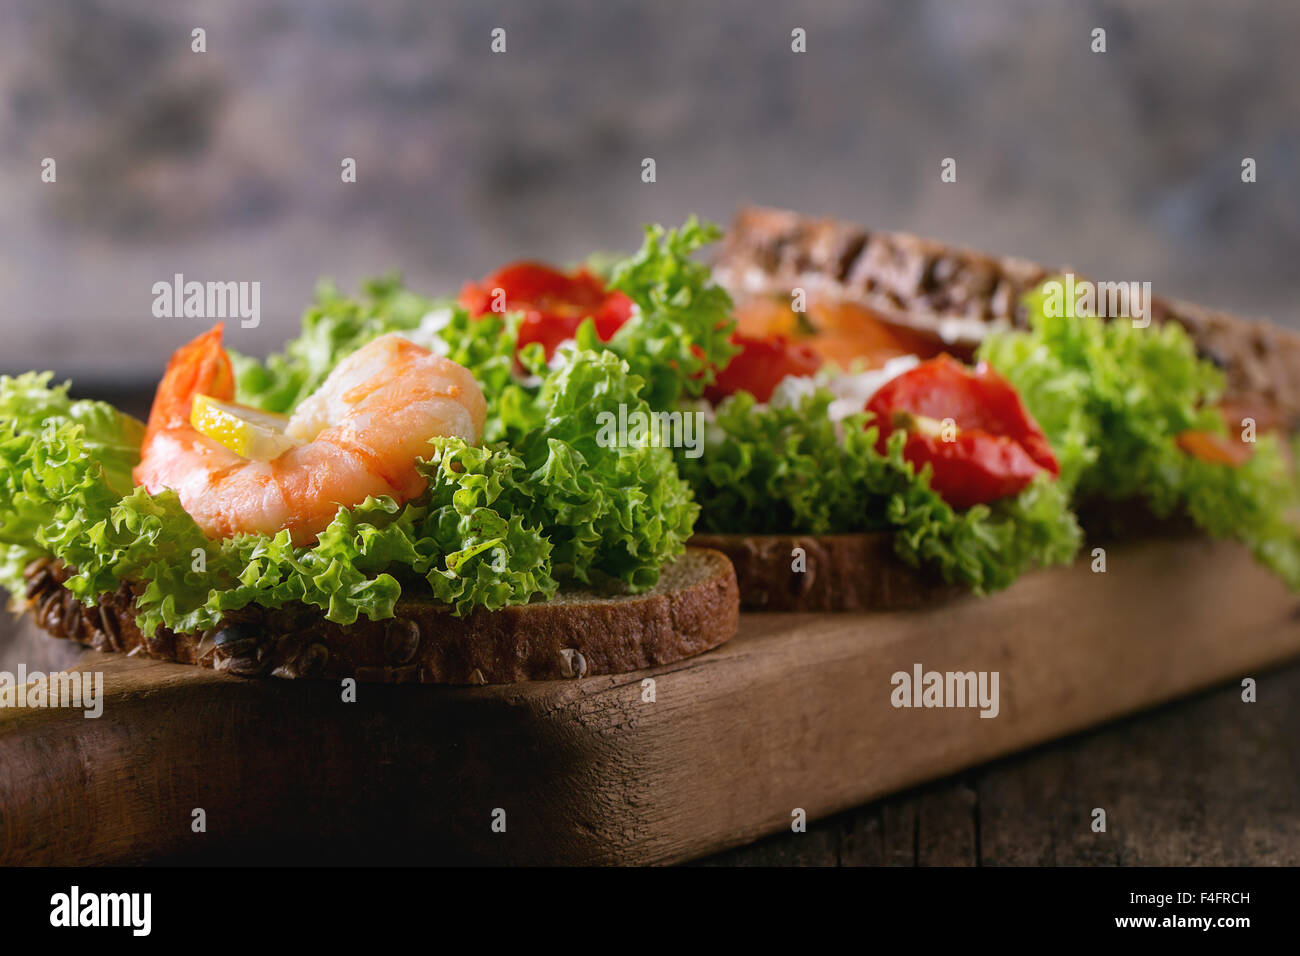 Nahaufnahme eines Sandwiches mit Vollkornbrot, frischem Salat, Feta-Käse, Tomaten, Garnelen und gesalzener Lachs auf Holz schneiden Bo Stockfoto